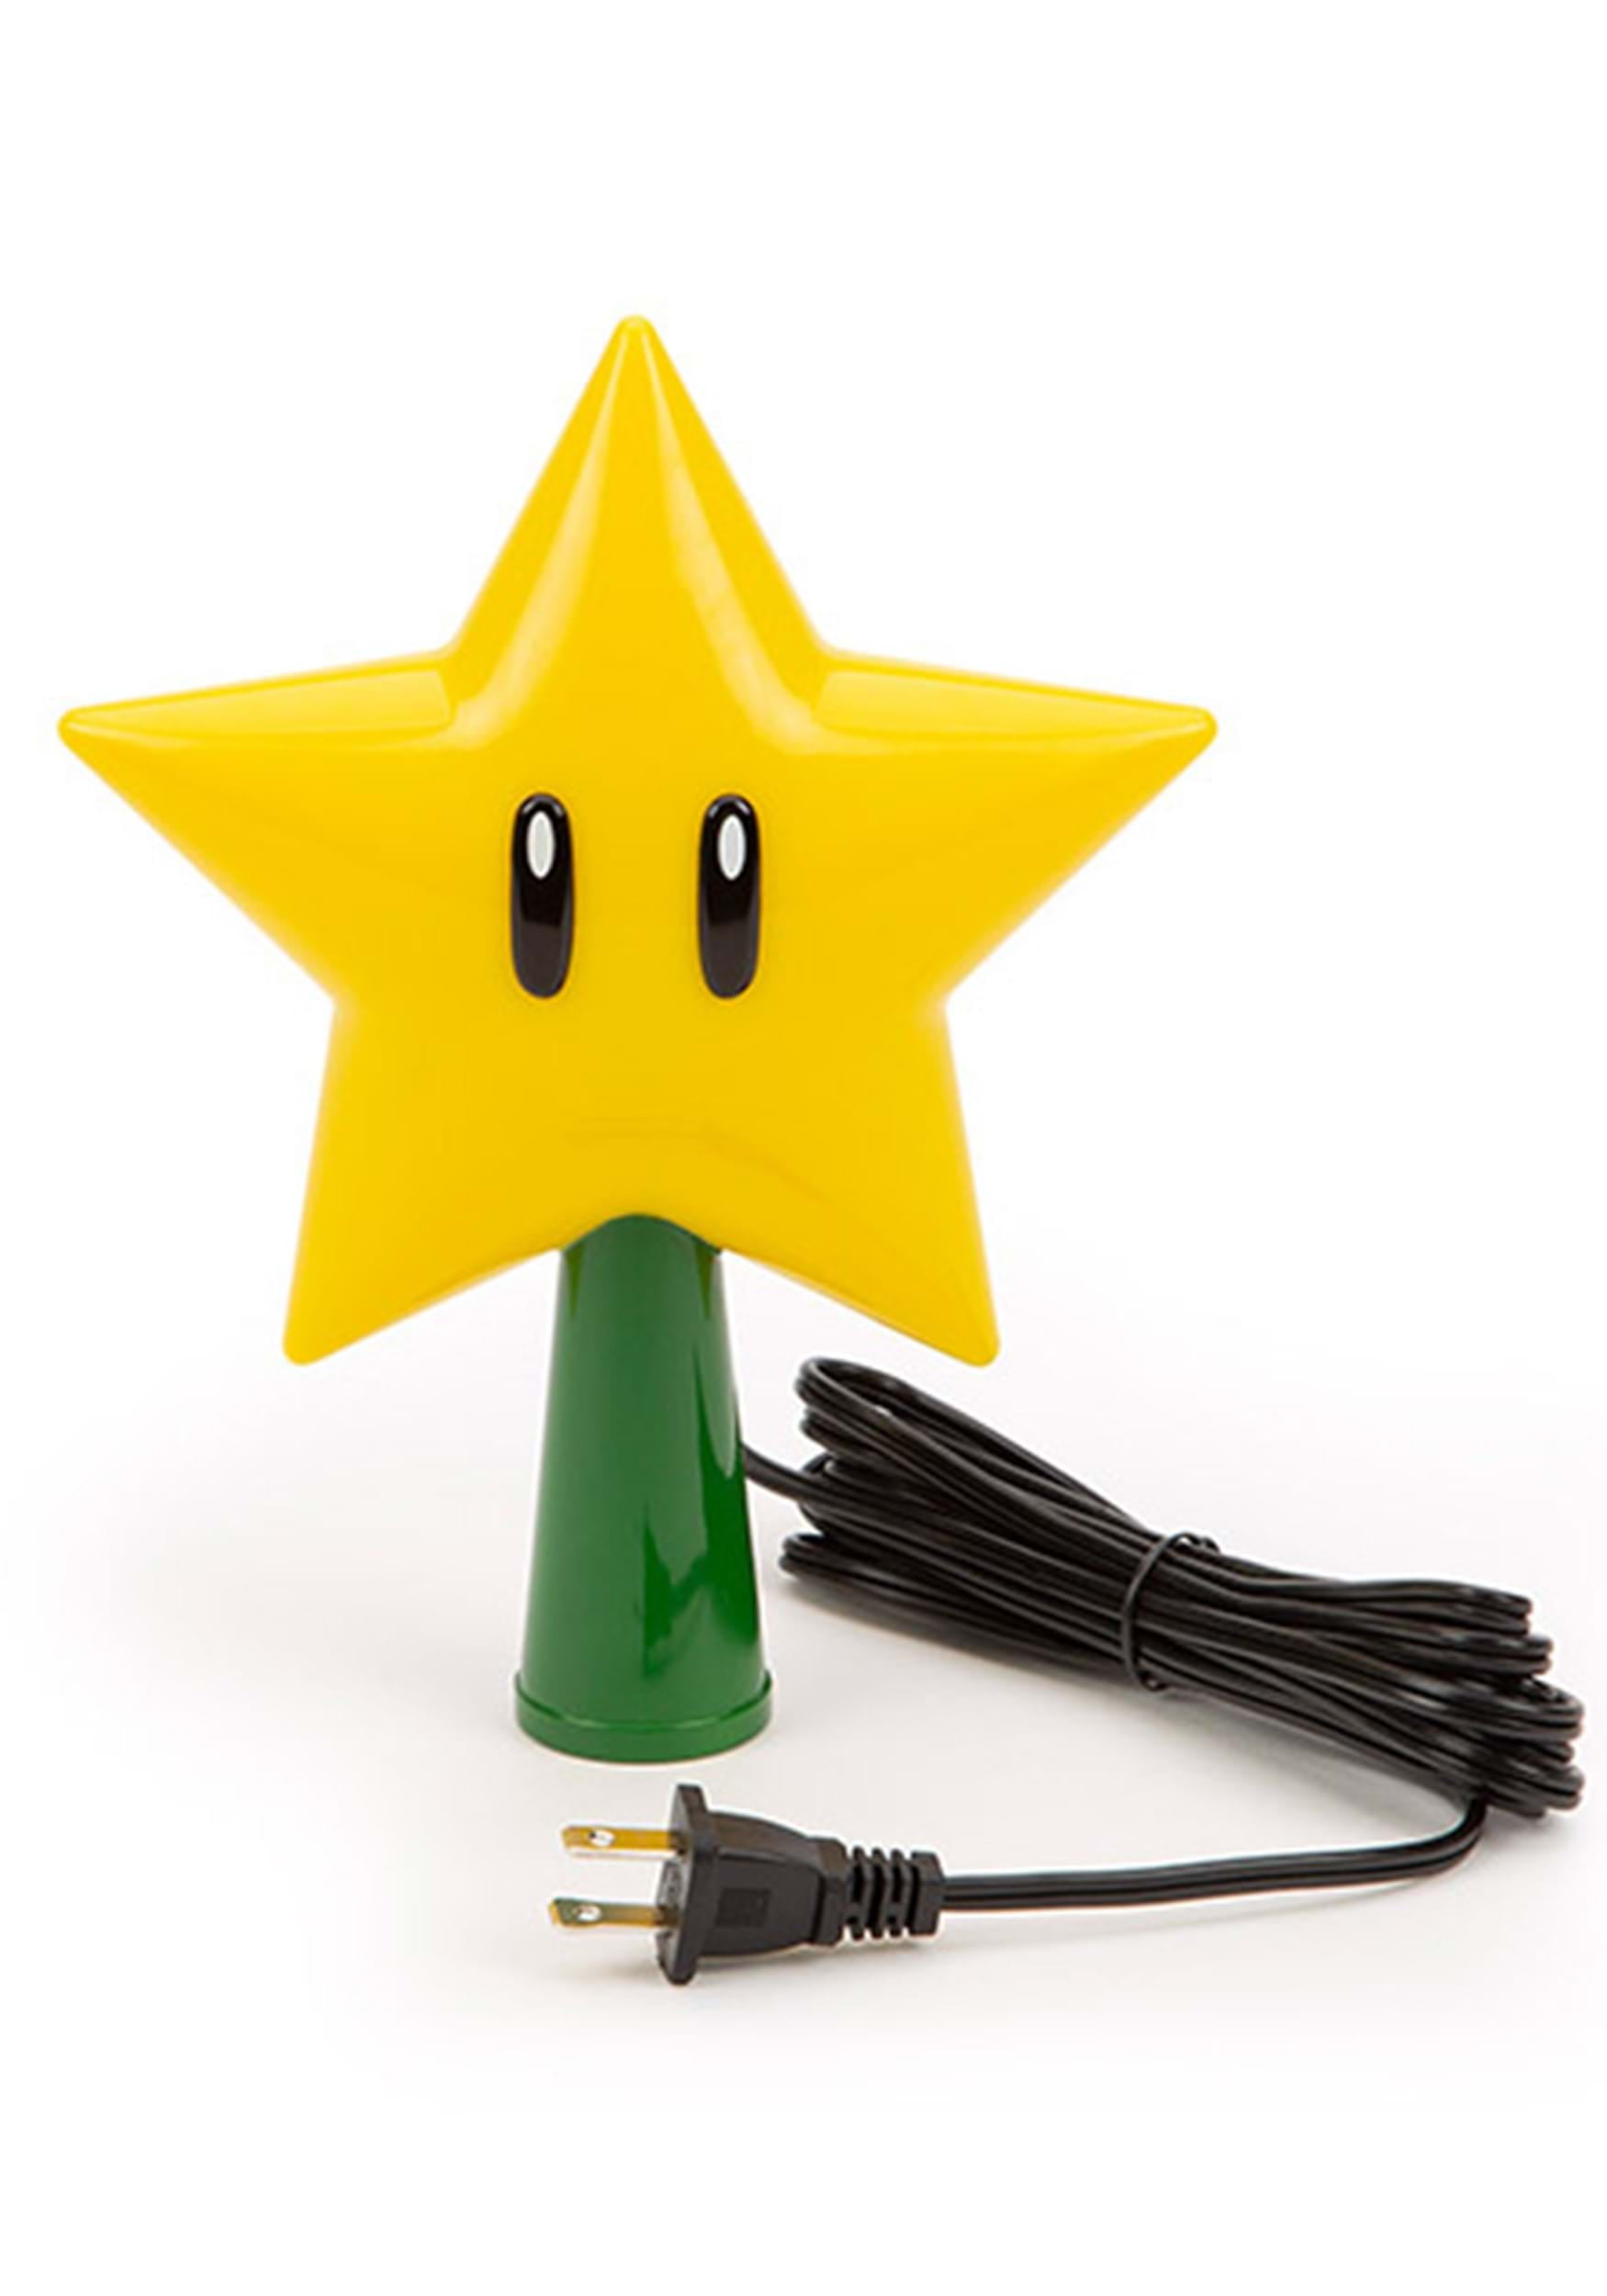  Tree Topper Mario Super Star Gen 2 Plug in Light Up